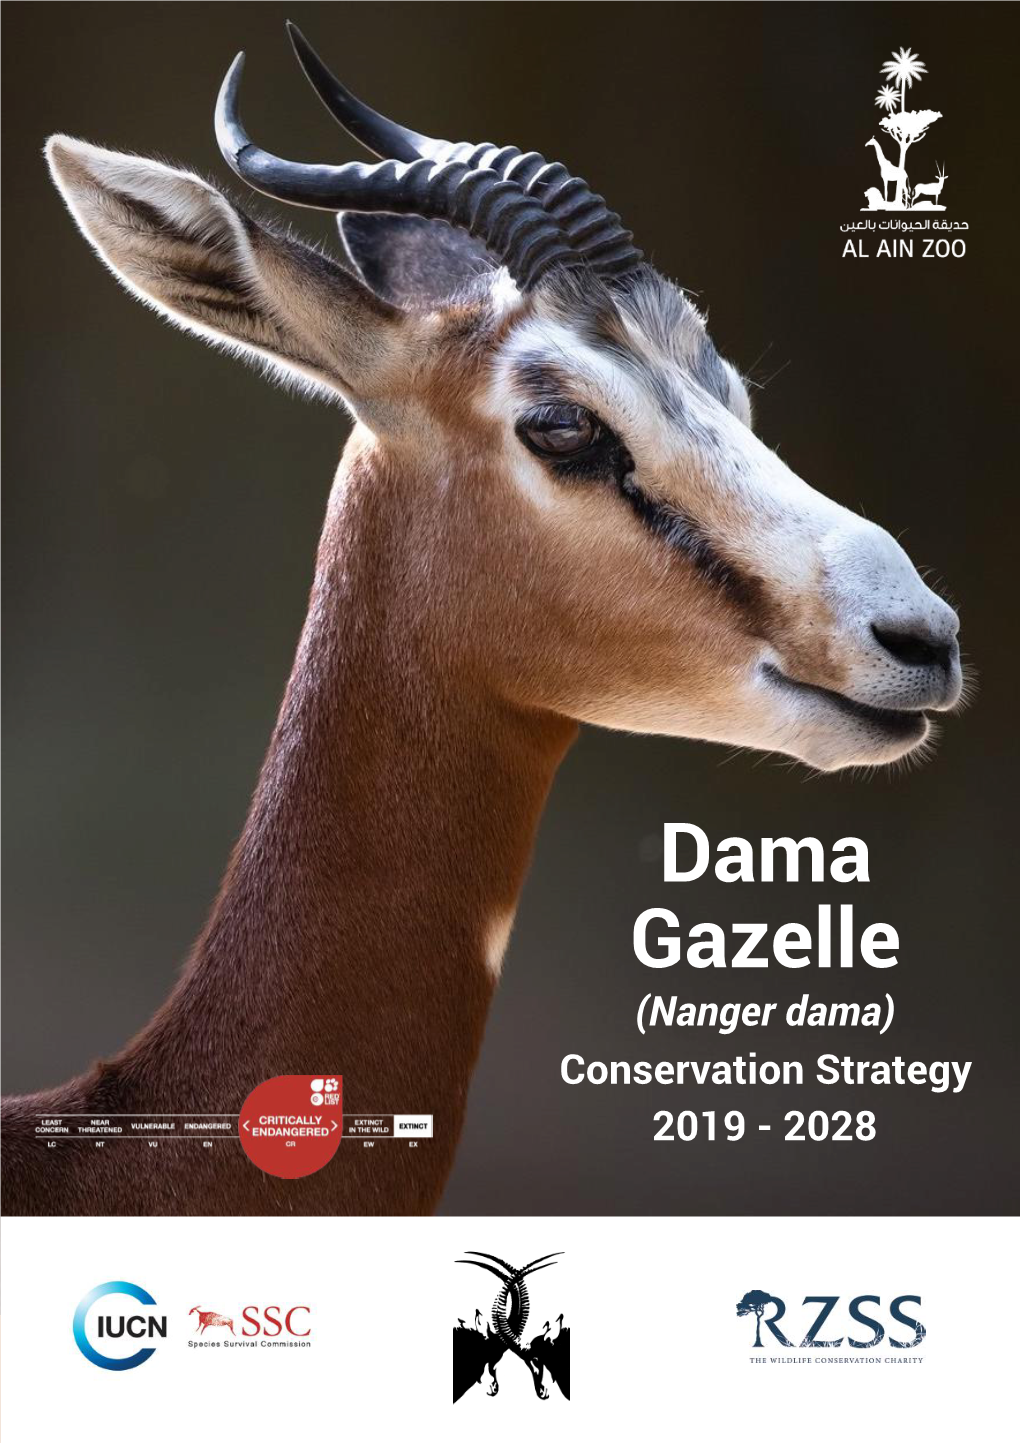 Dama Gazelle Conservation Strategy 2019-2028